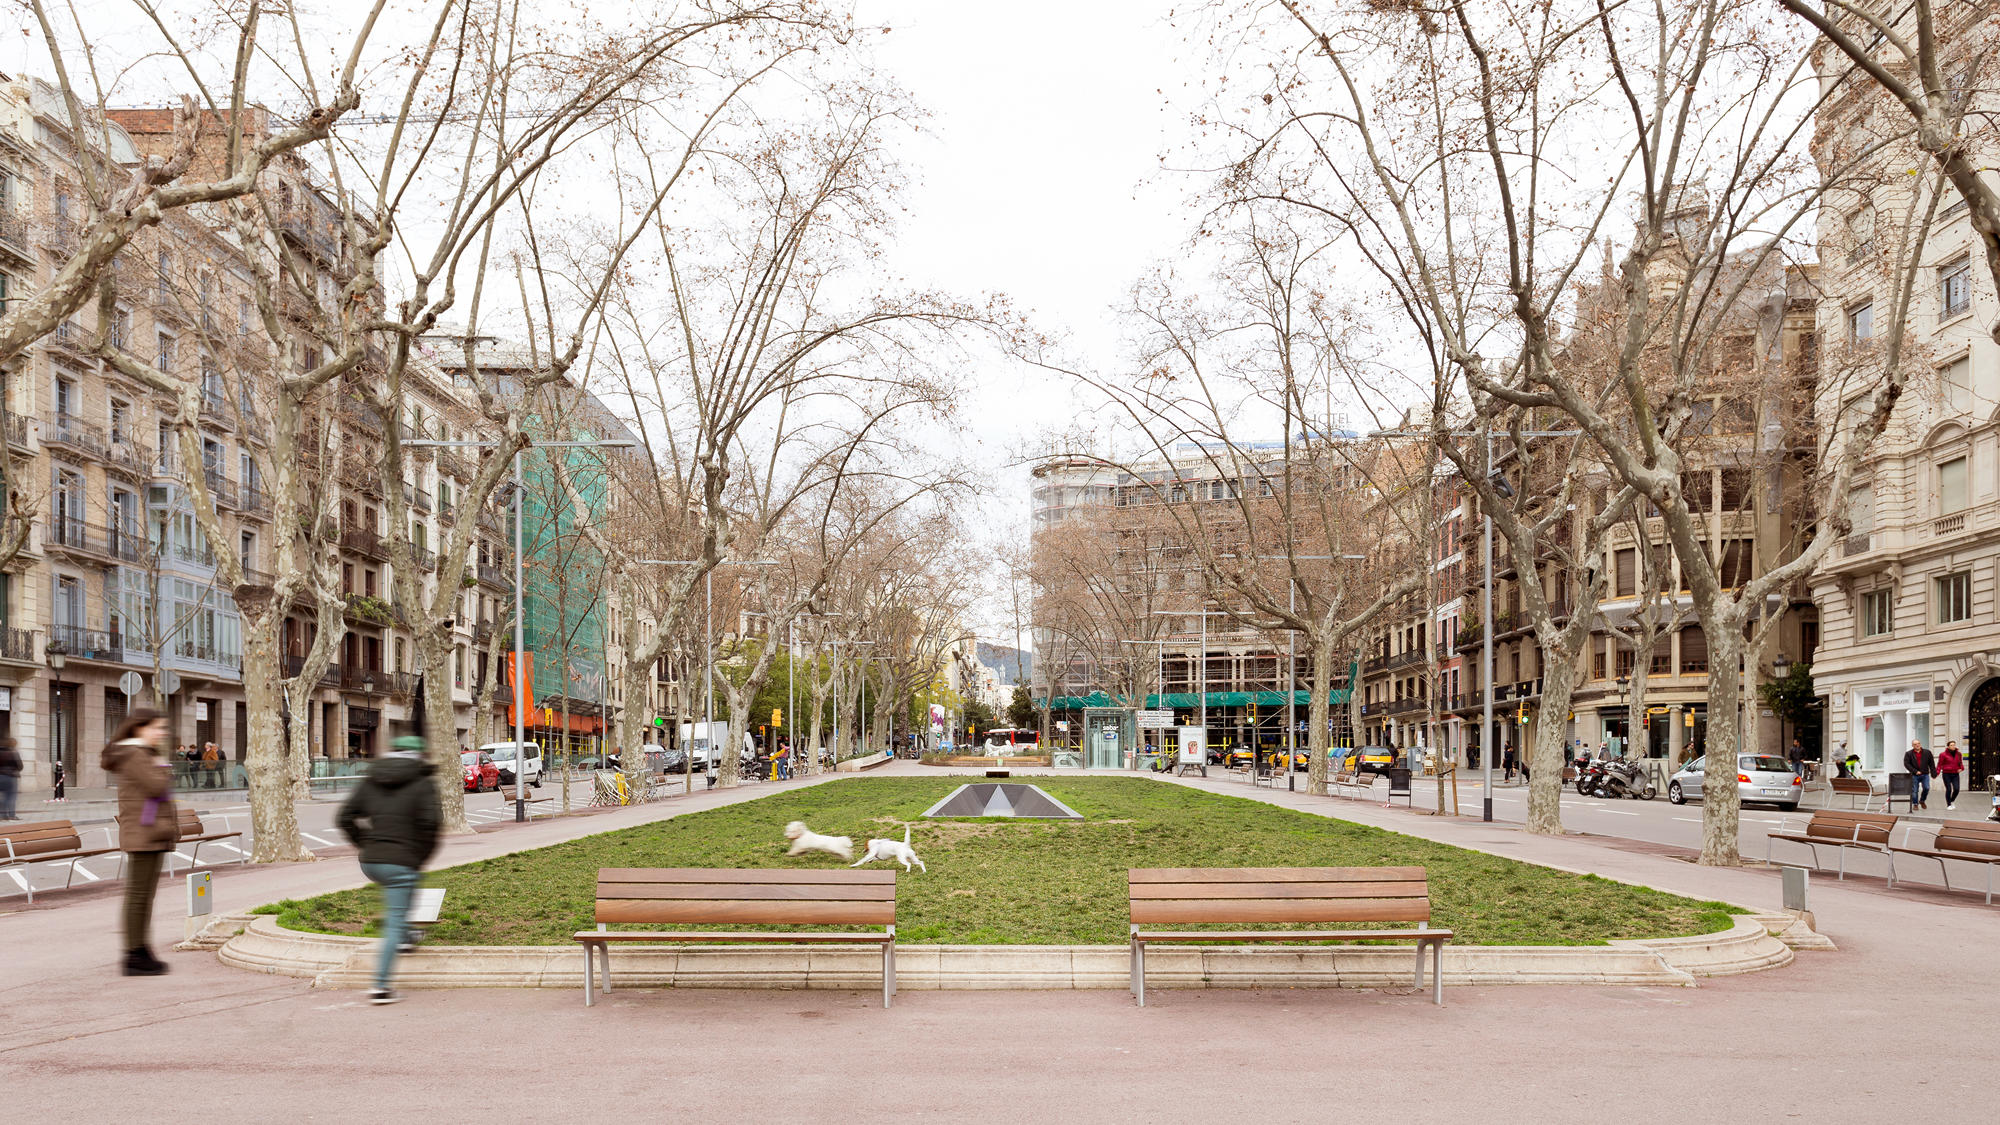 Barcelona 2023 - Passeig de Gracia - Paseo de Gracia street Barcelona